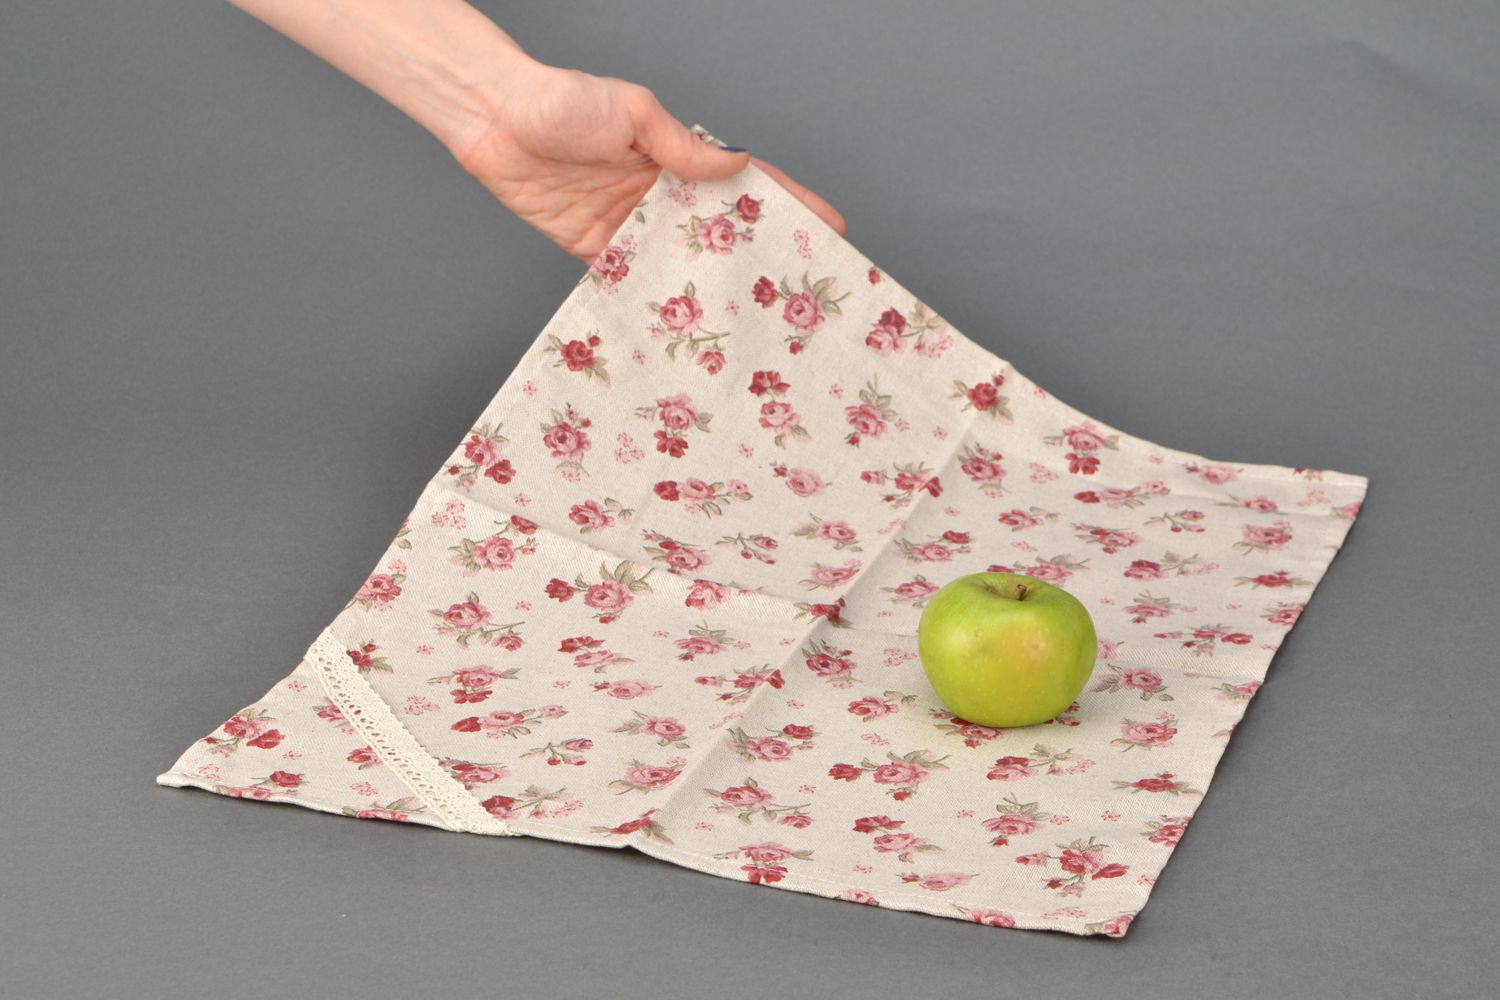 Декоративная салфетка из хлопка и полиамида с цветочным принтом и кружевом фото 2